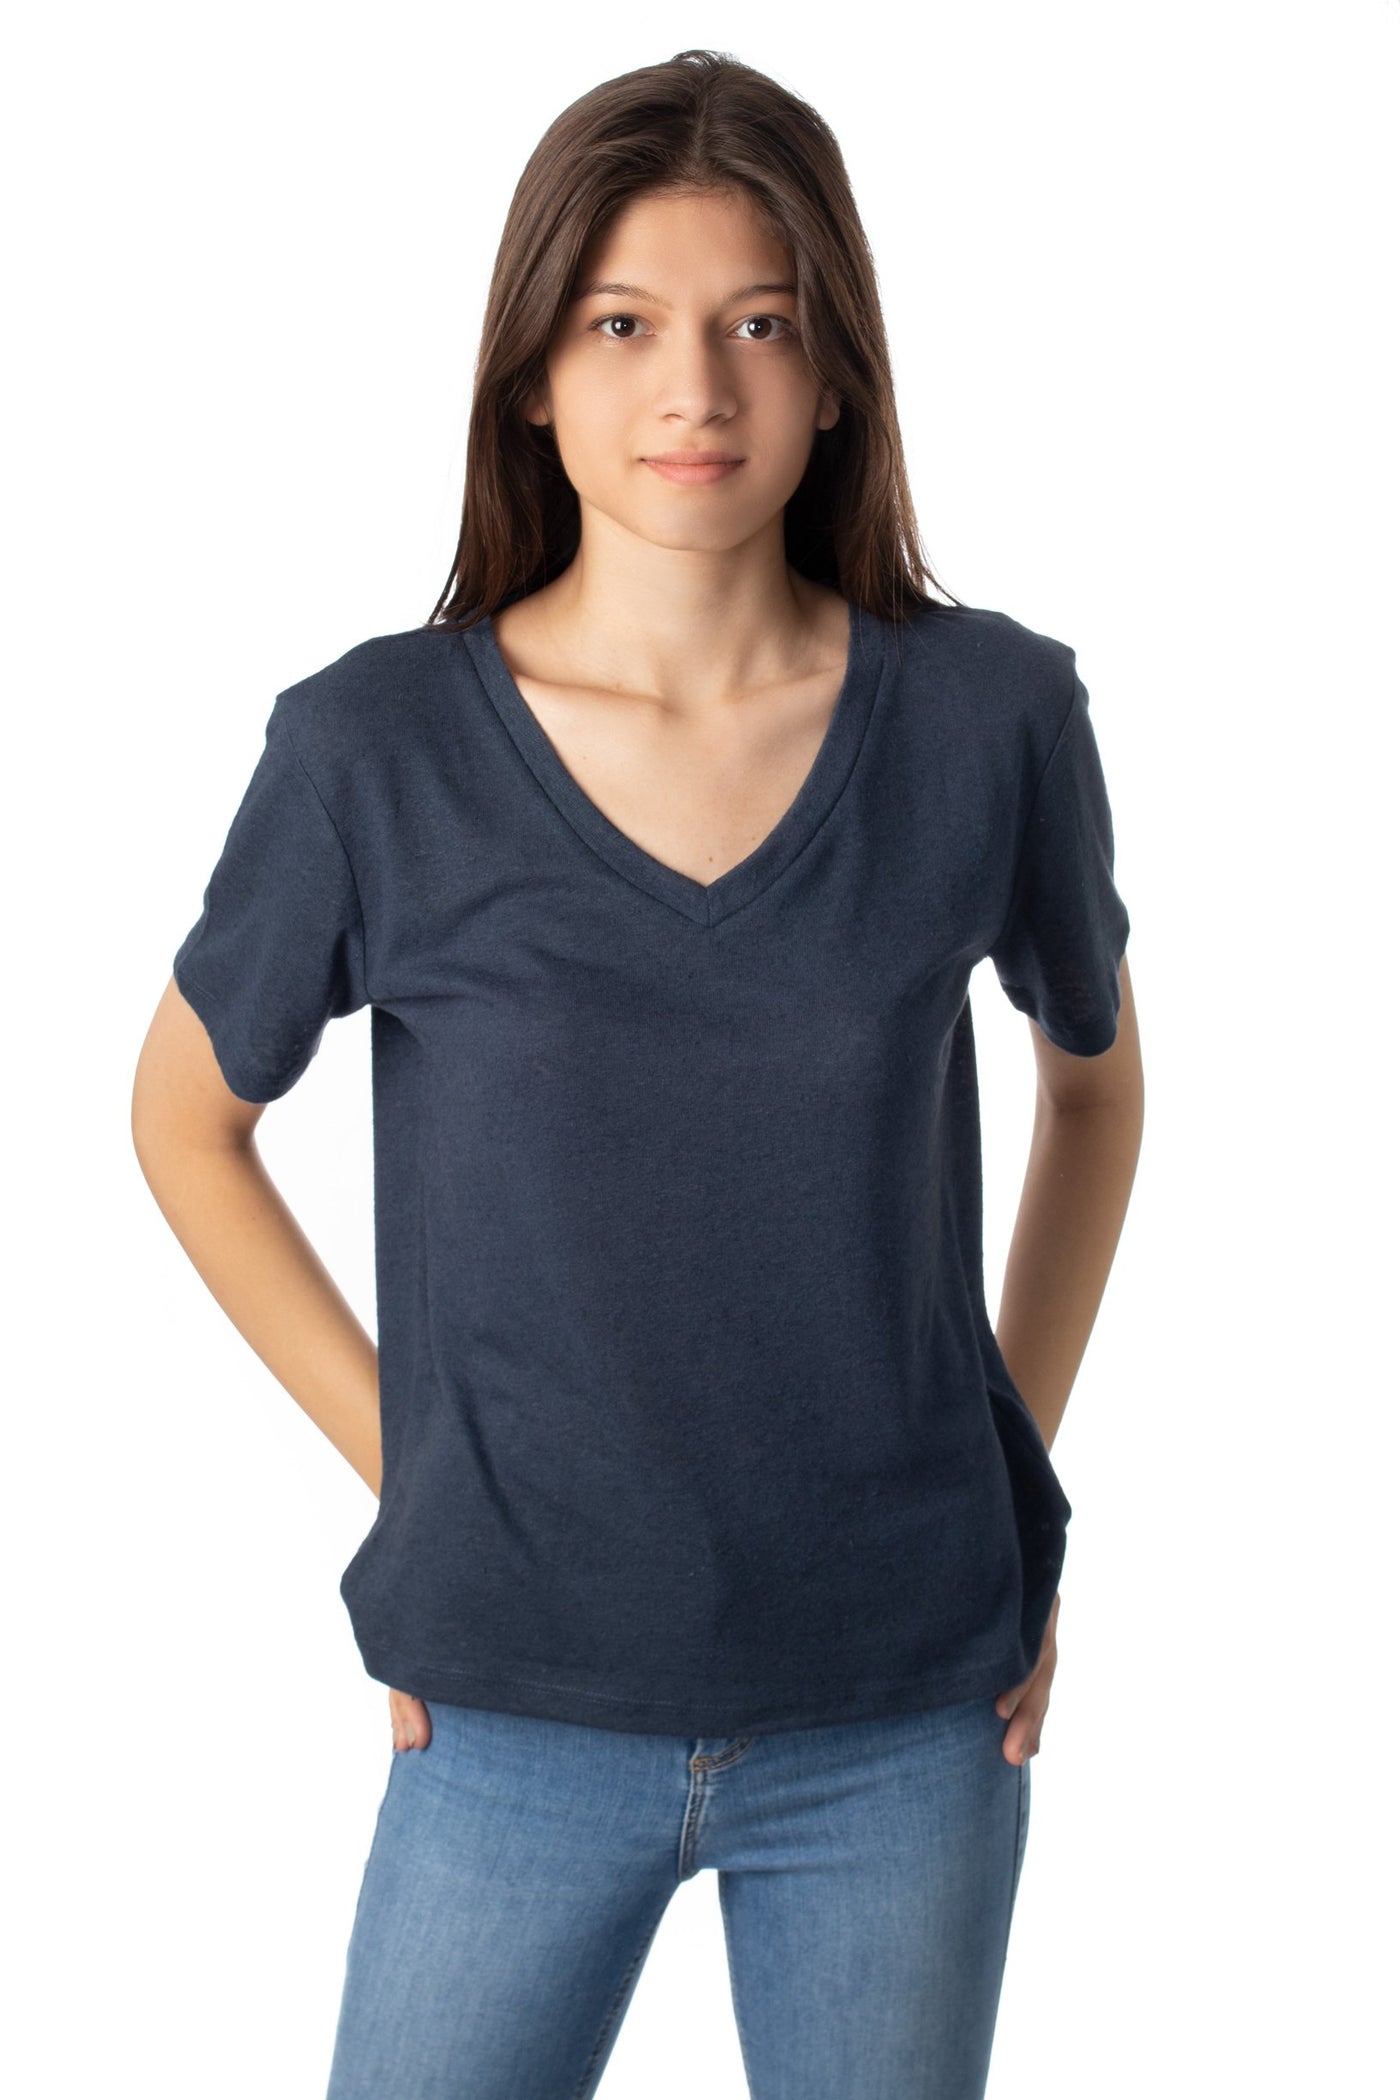 chassca V-neck linen t-shirt - Breakmood